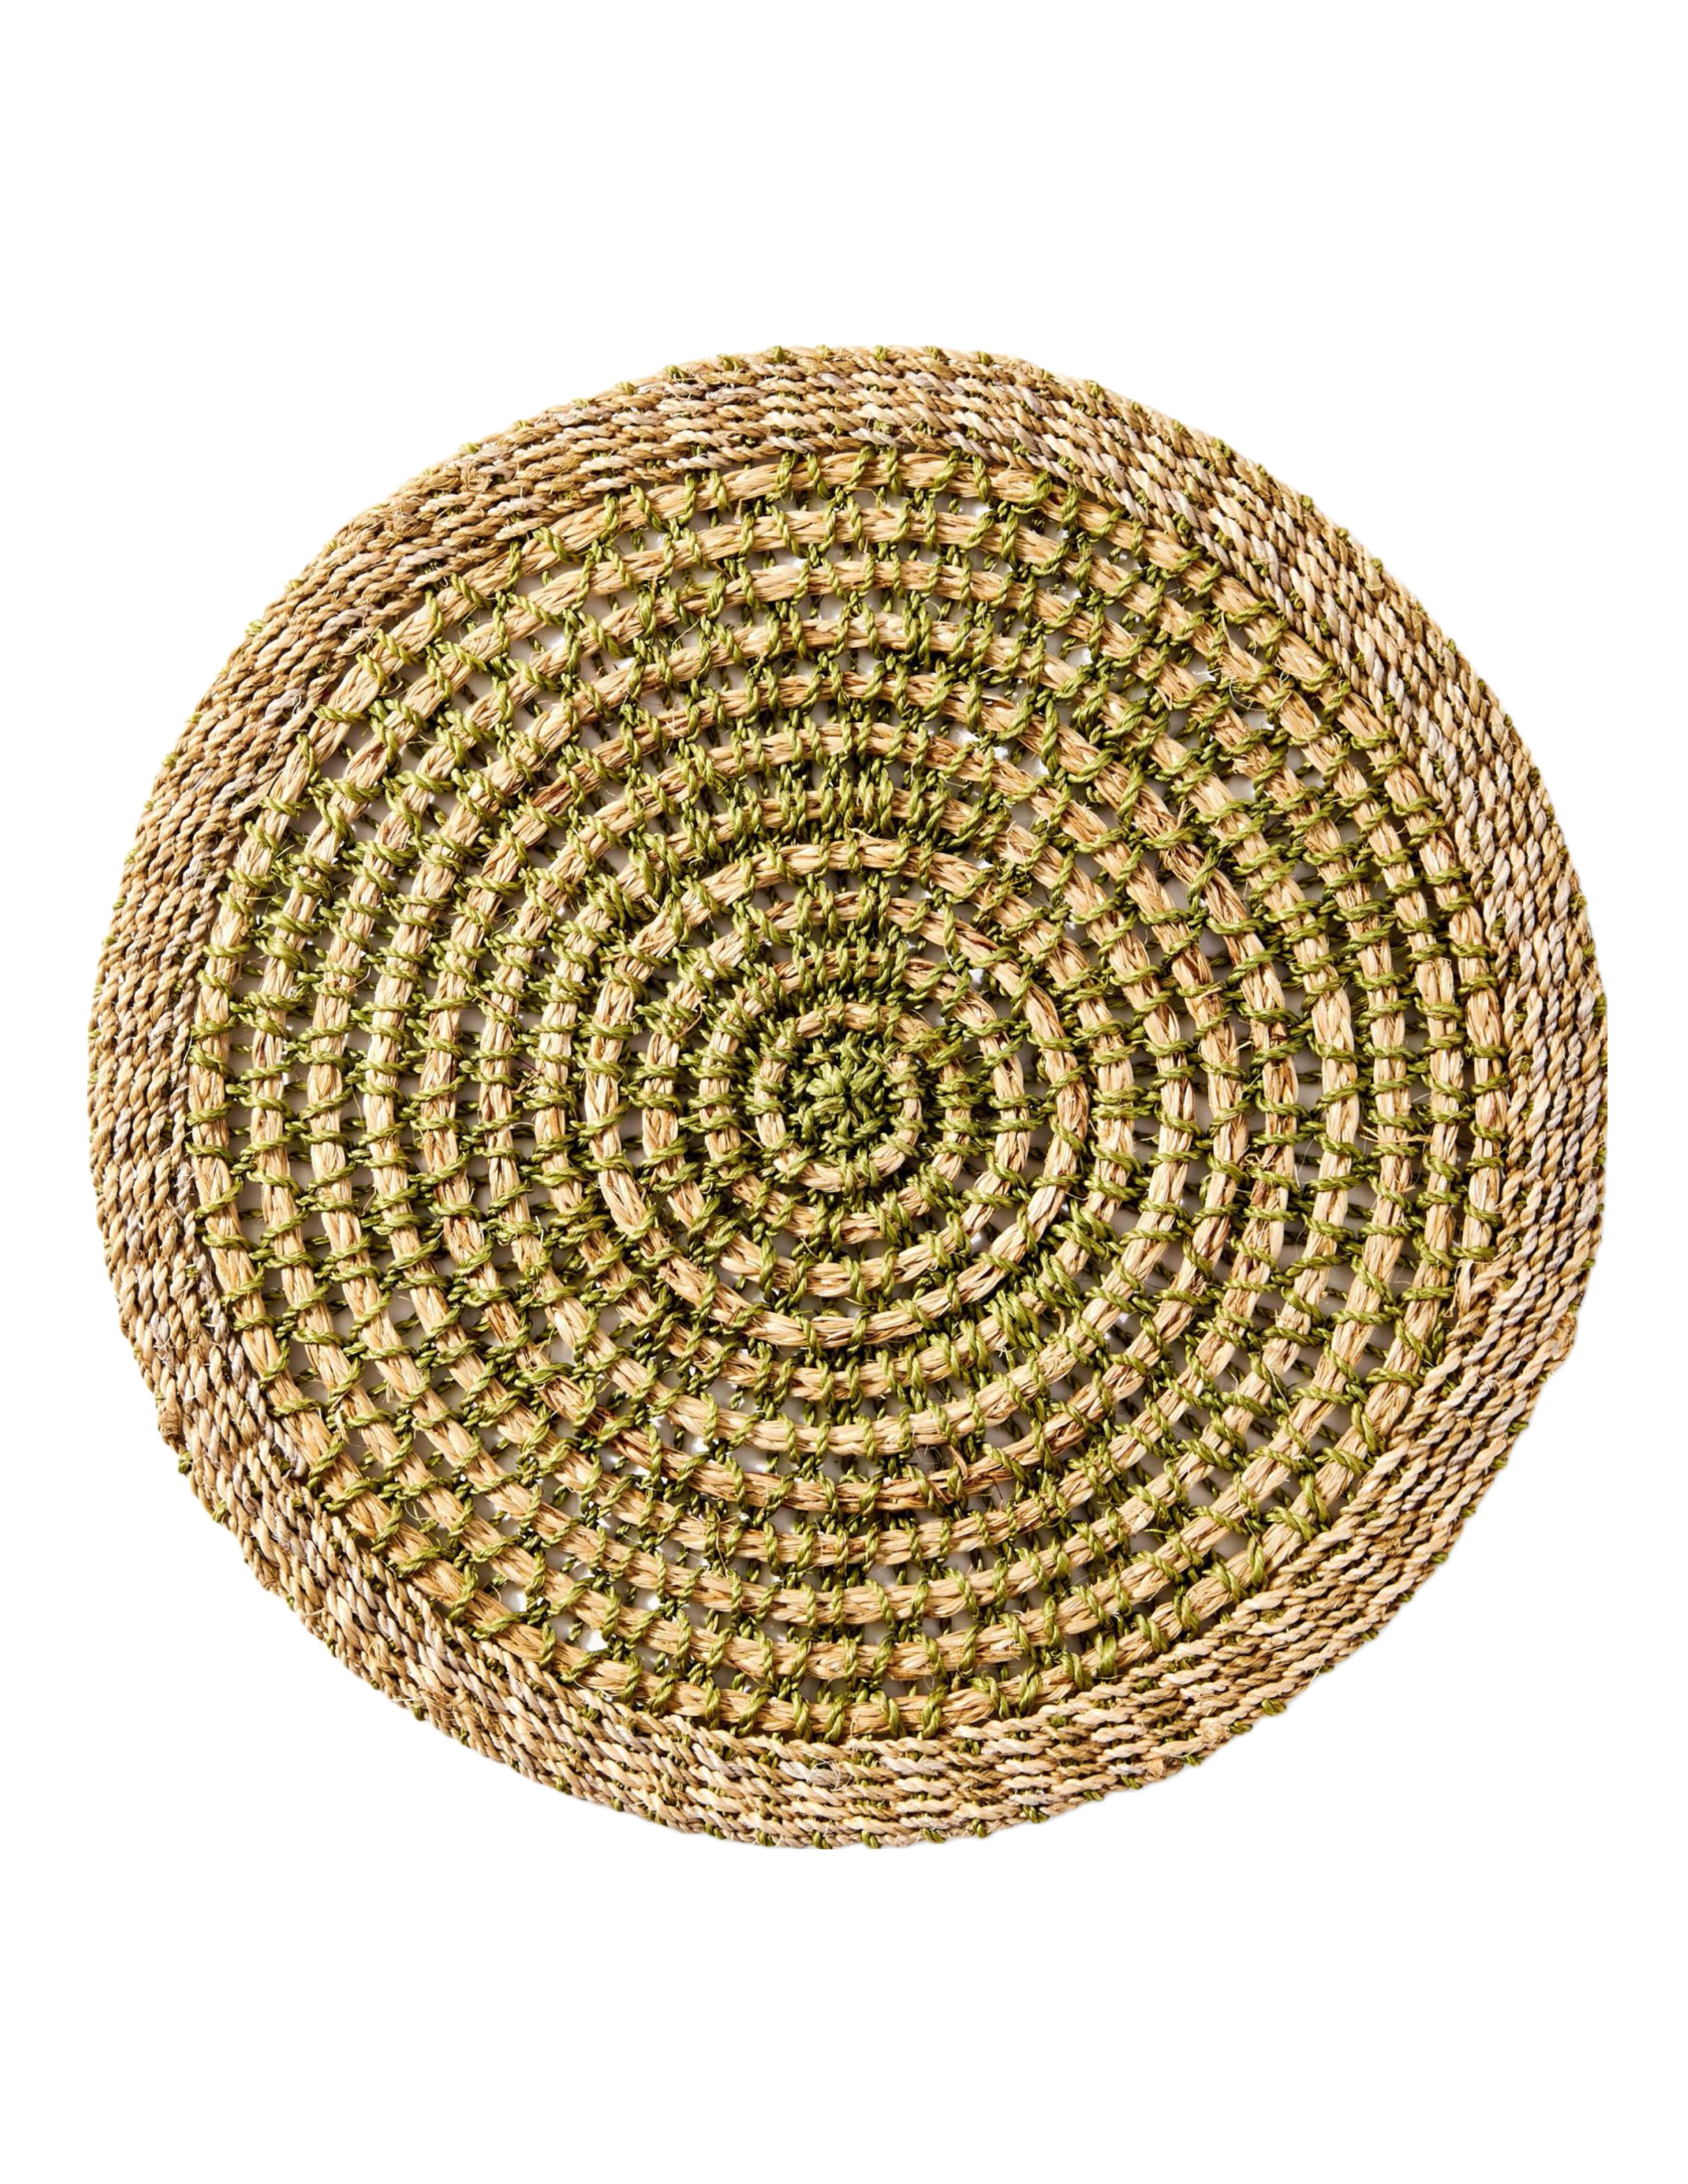 Crochet Abaca Placemat Set of 4 - Grass